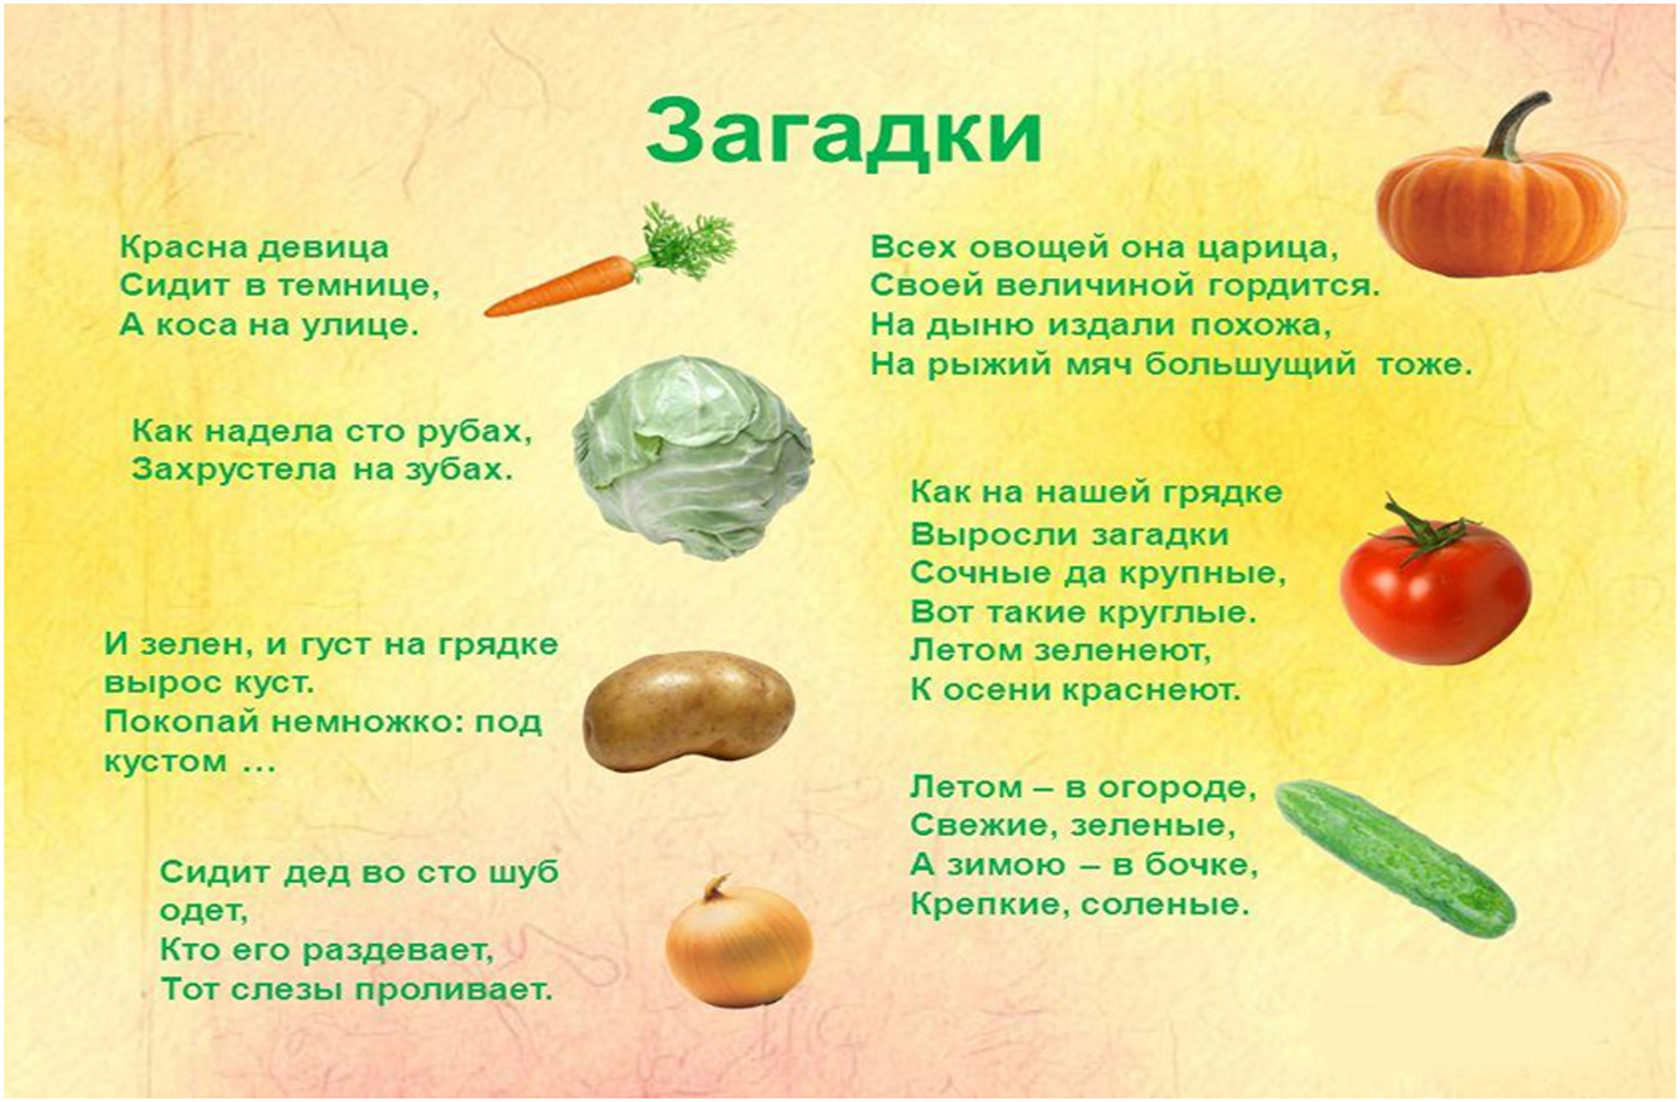 Загадки про овощи и фрукты для детей 3-4 лет